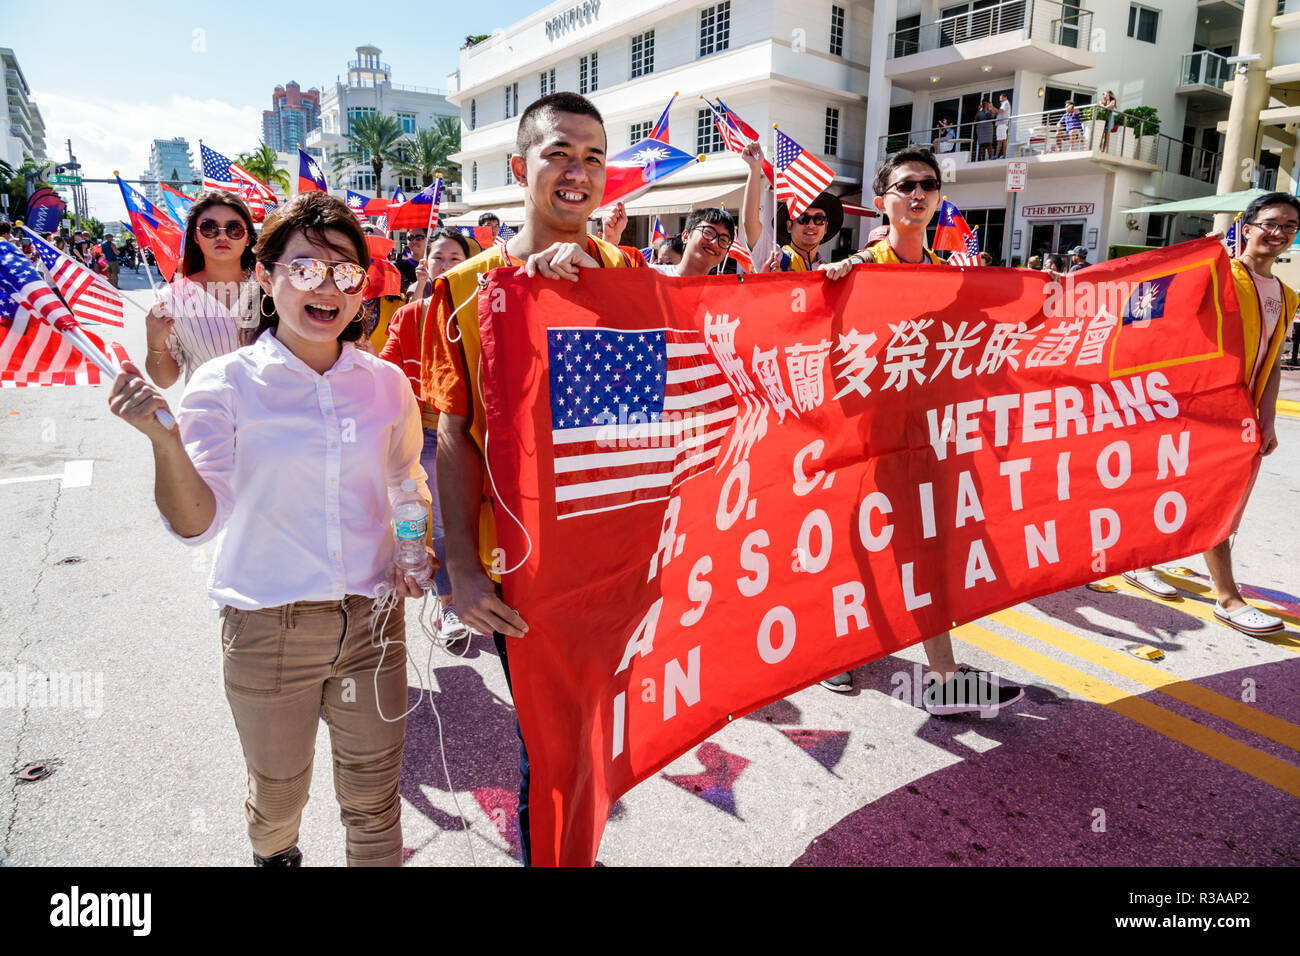 Miami Beach, Florida, Ocean Drive, Veterans Day Parade Aktivitäten, ROC Republic China Association, Taiwanesisch, asiatischer Mann Männer männlich, Marschbanner, FL181115052 Stockfoto